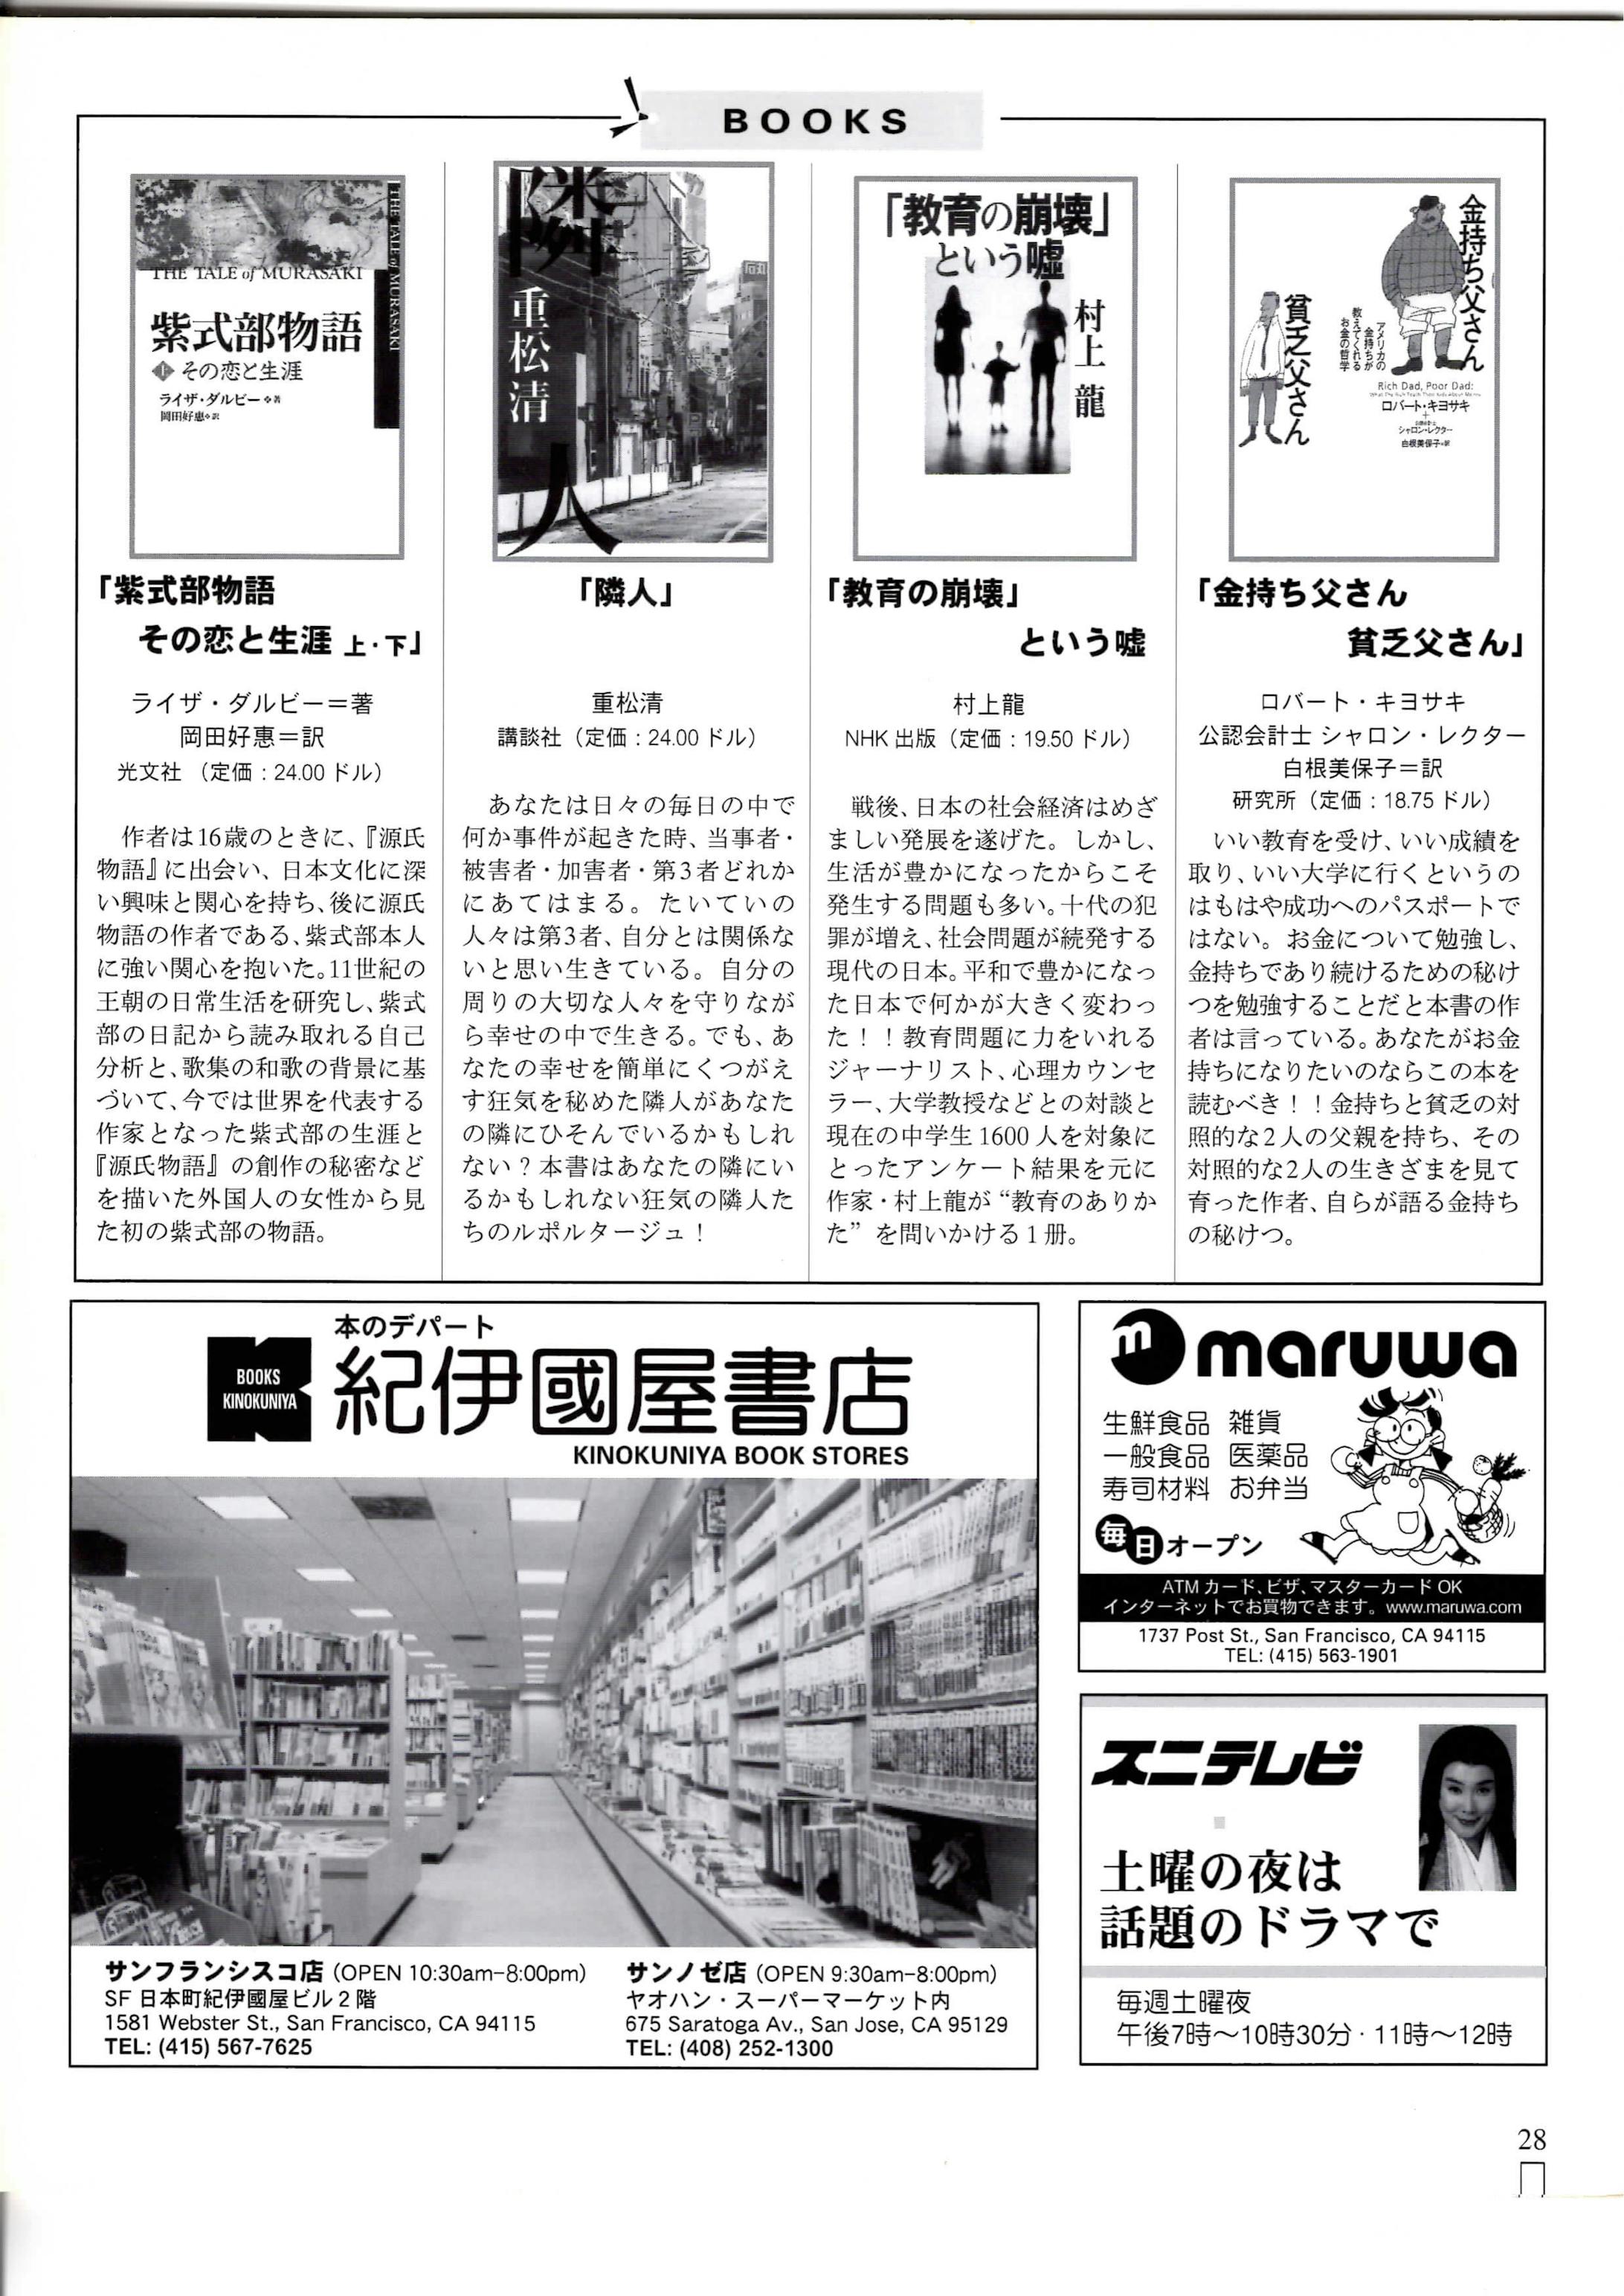 Books・CINEMA・Event Schedule・News Digest-1